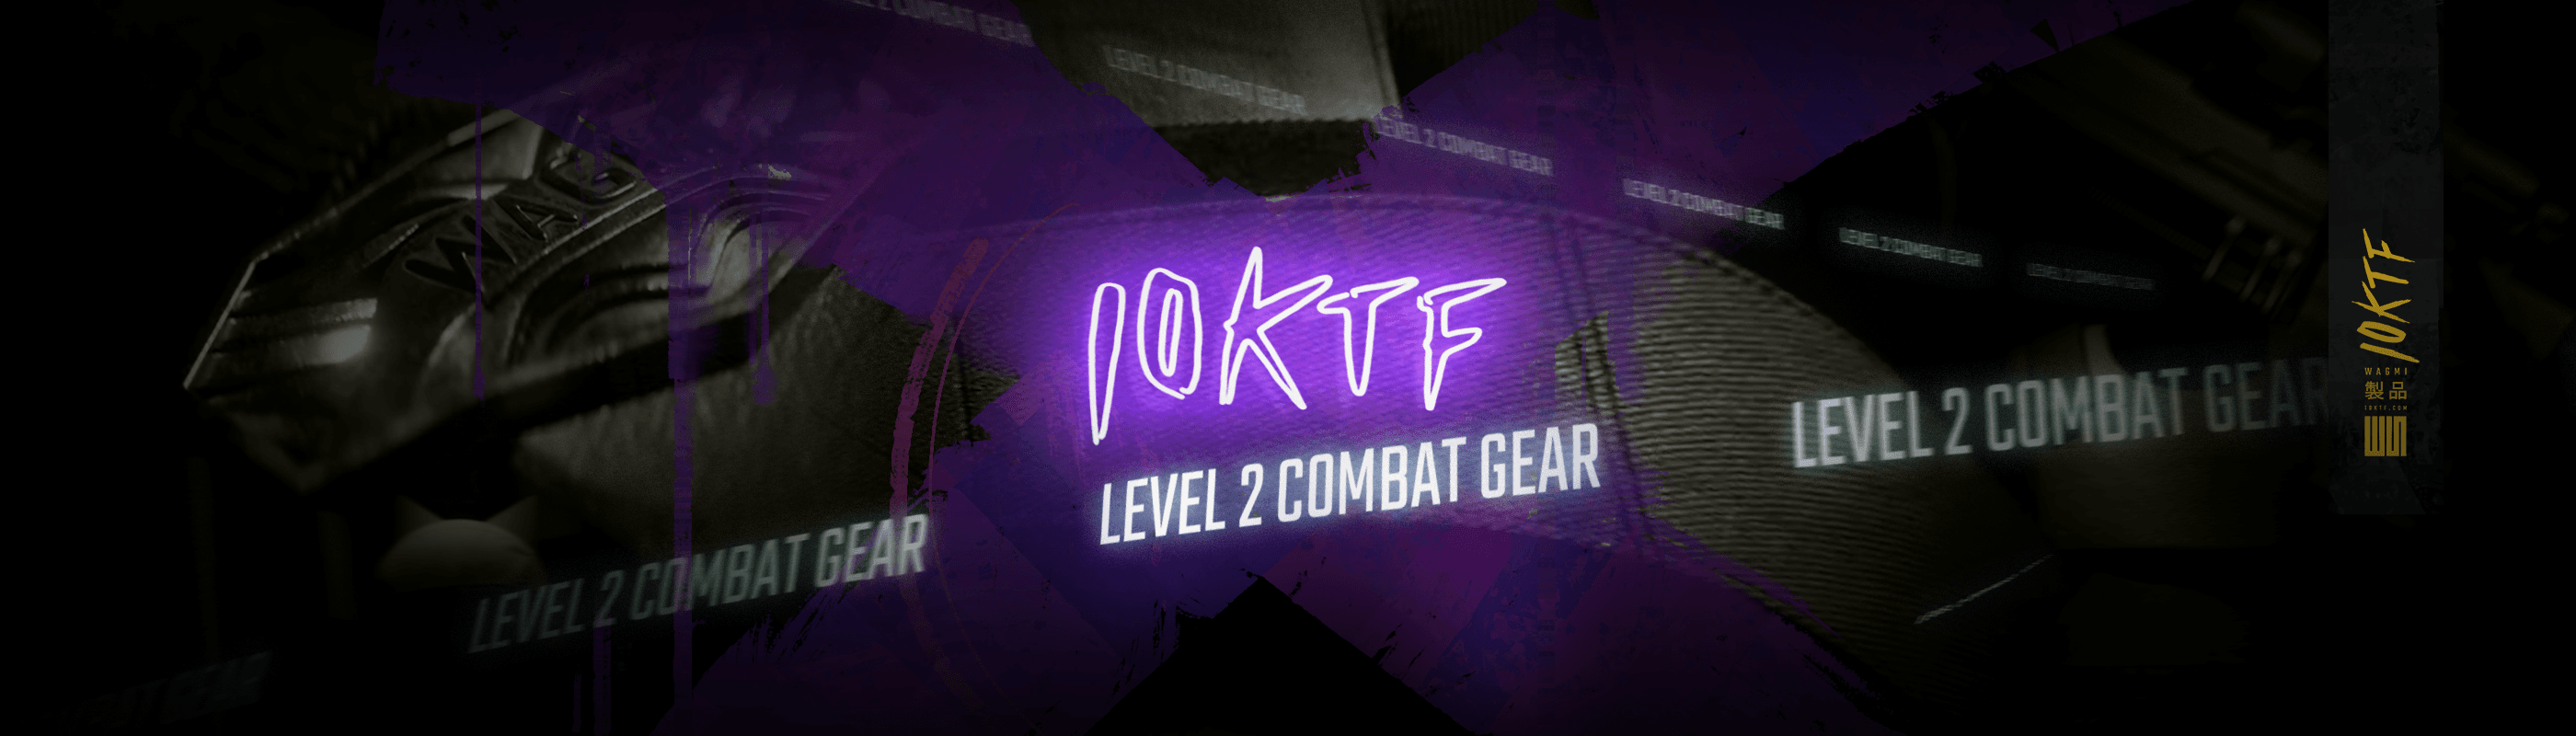 10KTF Combat Gear